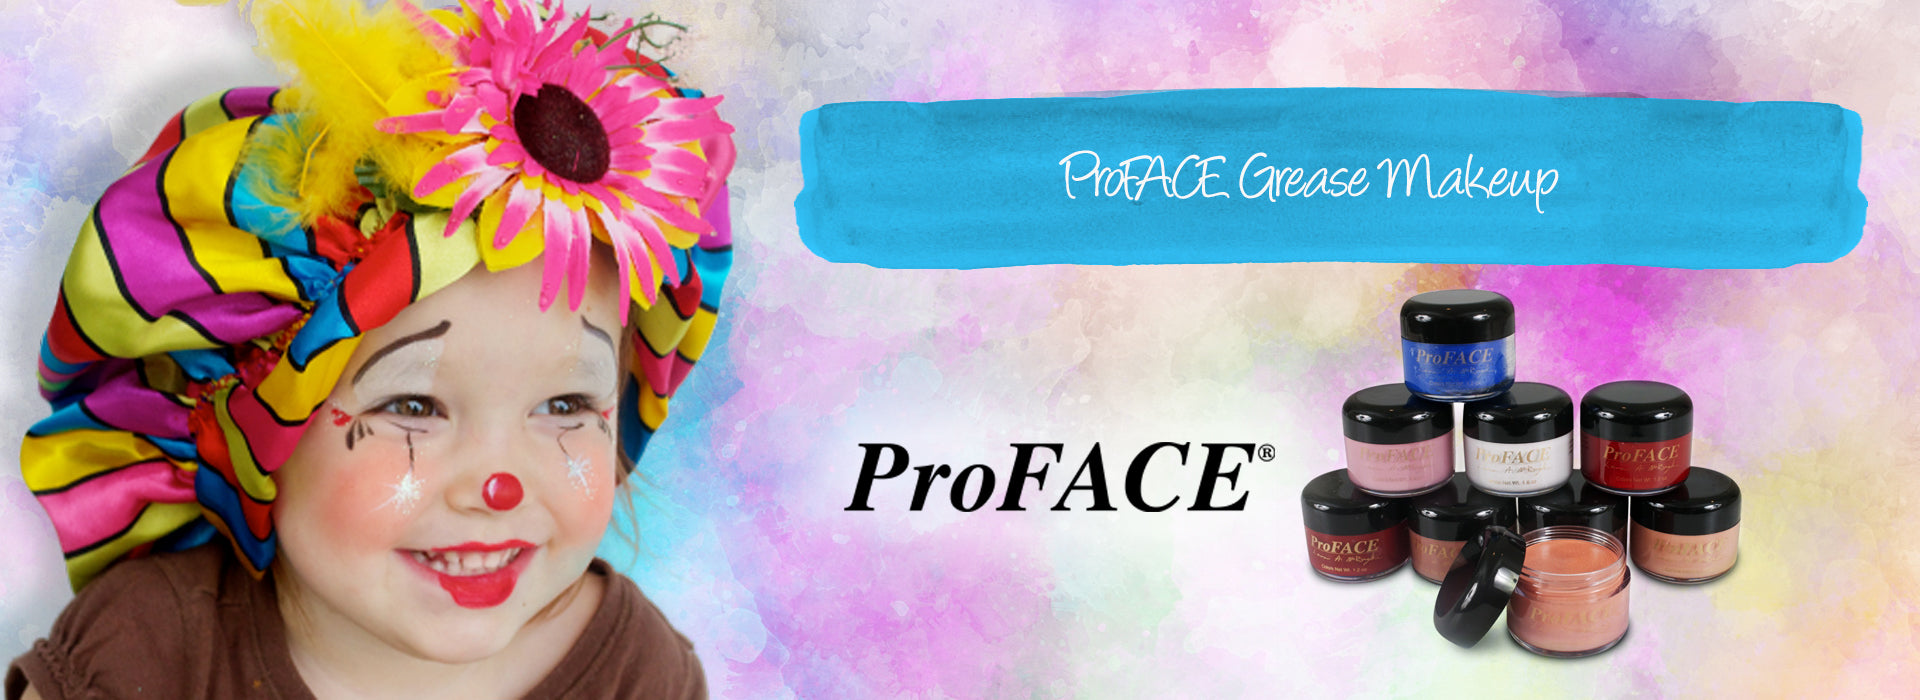 ProFACE Grease Makeup